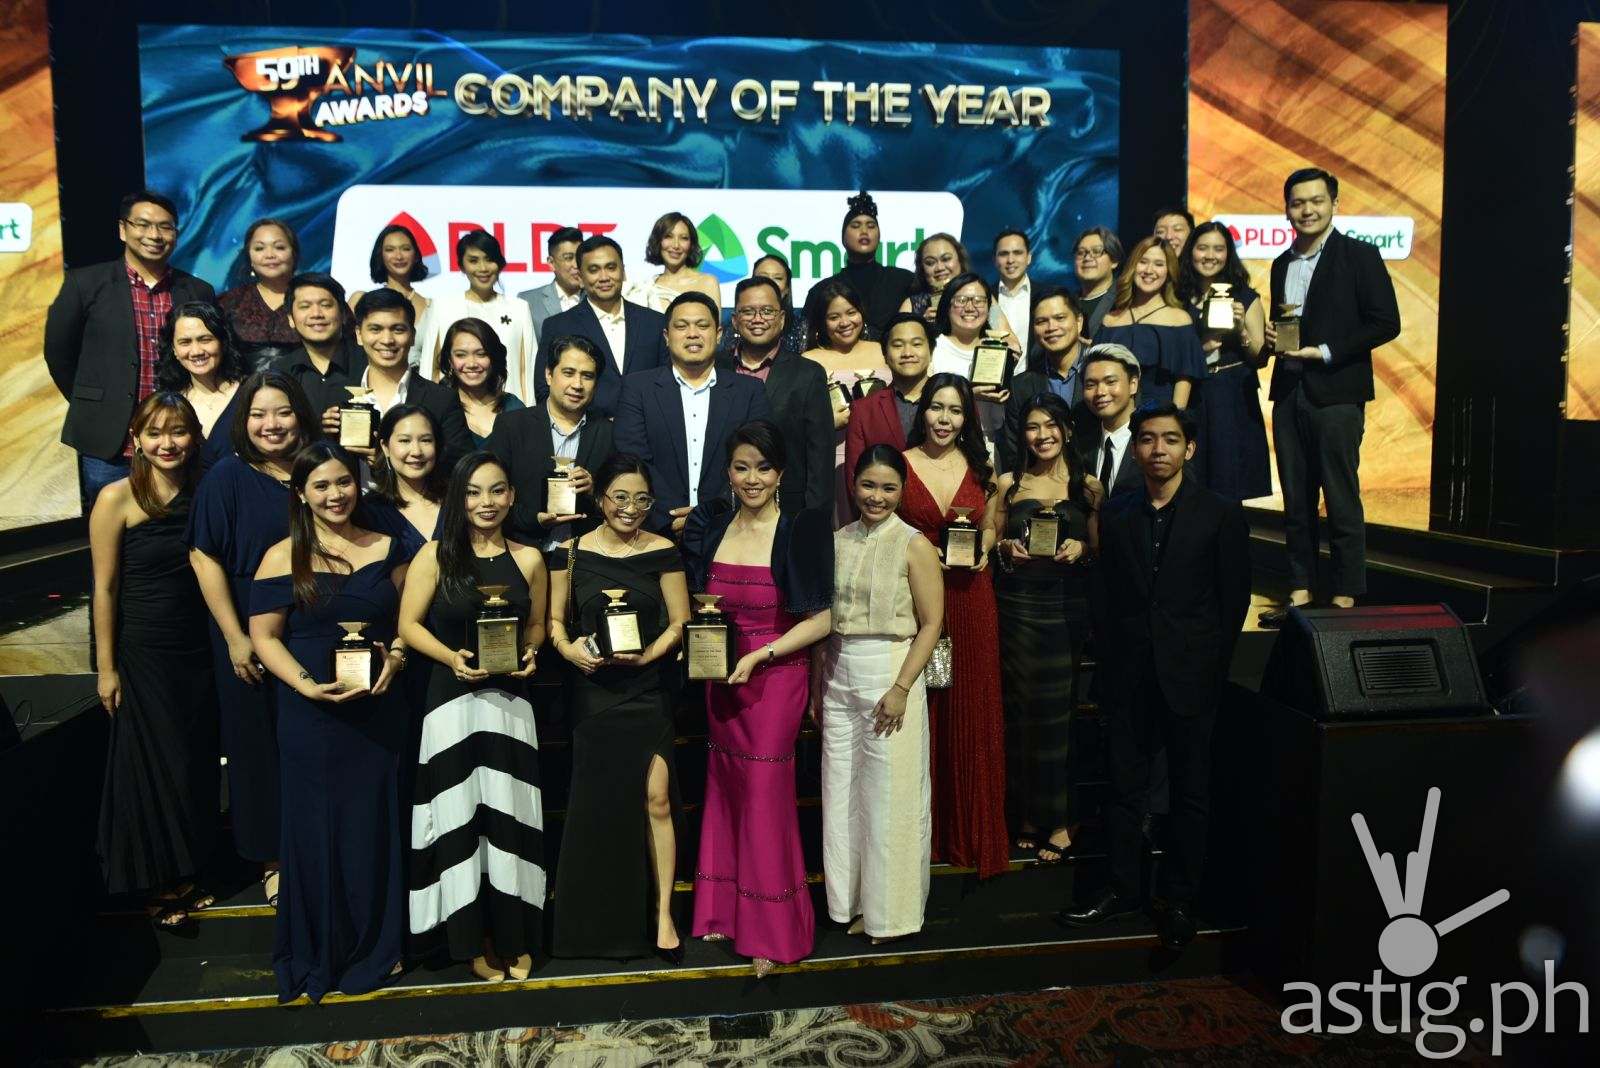 QC LGU, Megaworld, Ayala lead winners  at 59th Grand Anvil Awards